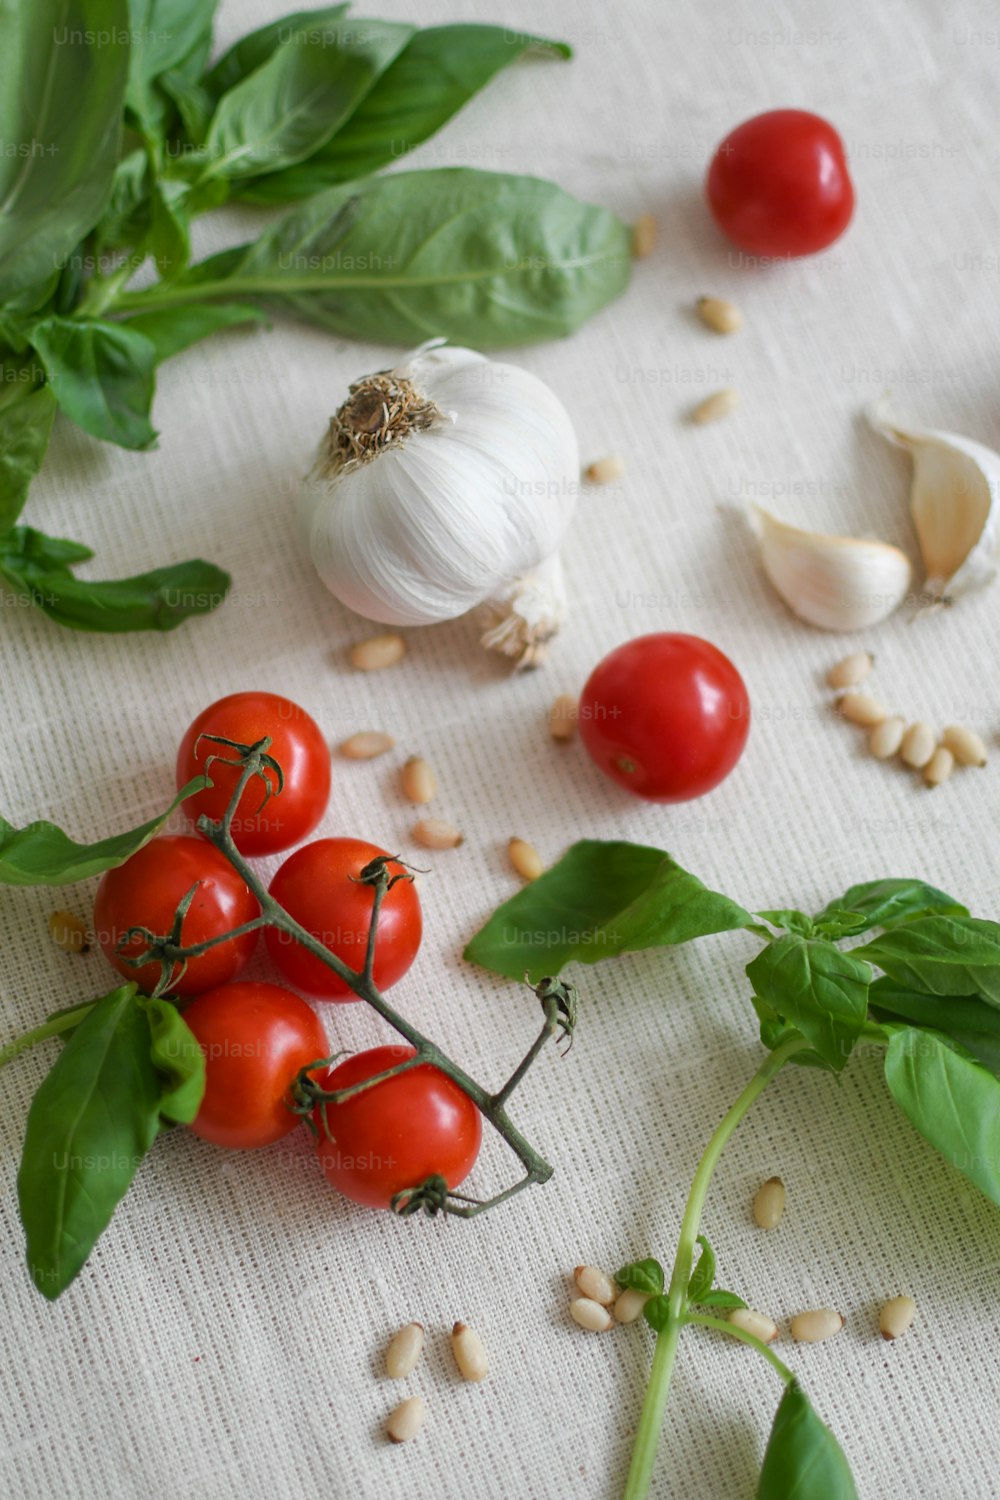 tomatoes, basil, garlic, and garlic on a table